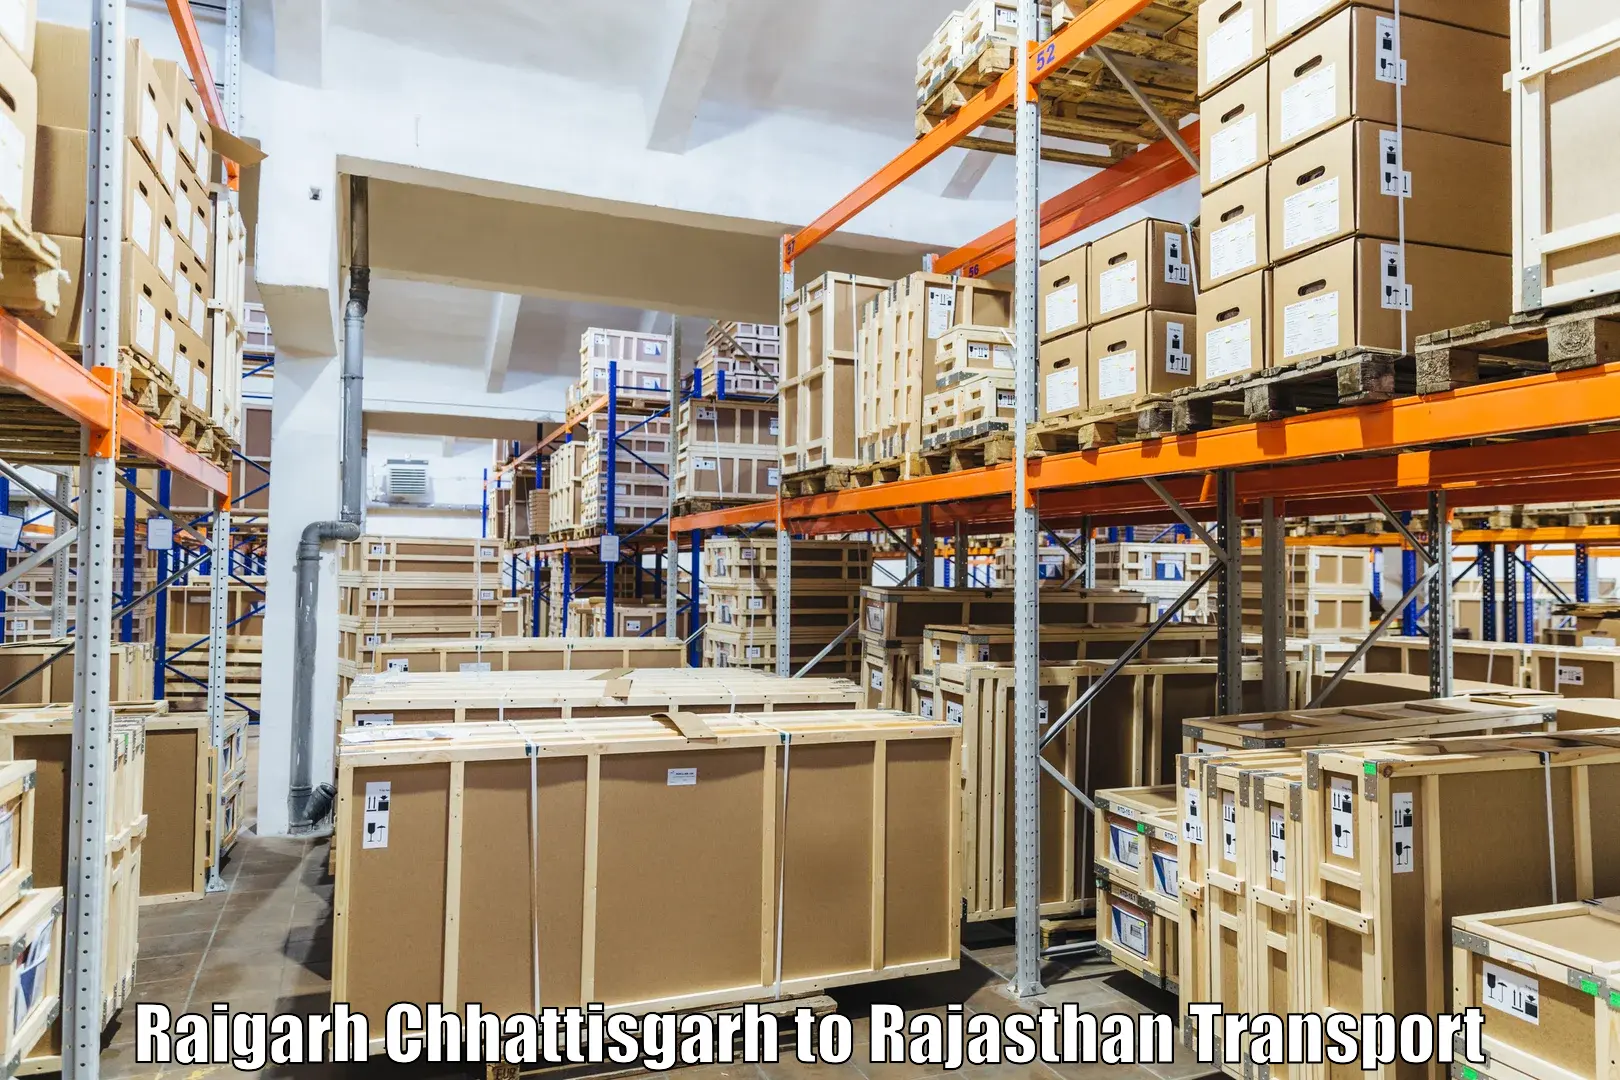 Interstate transport services Raigarh Chhattisgarh to Balesar